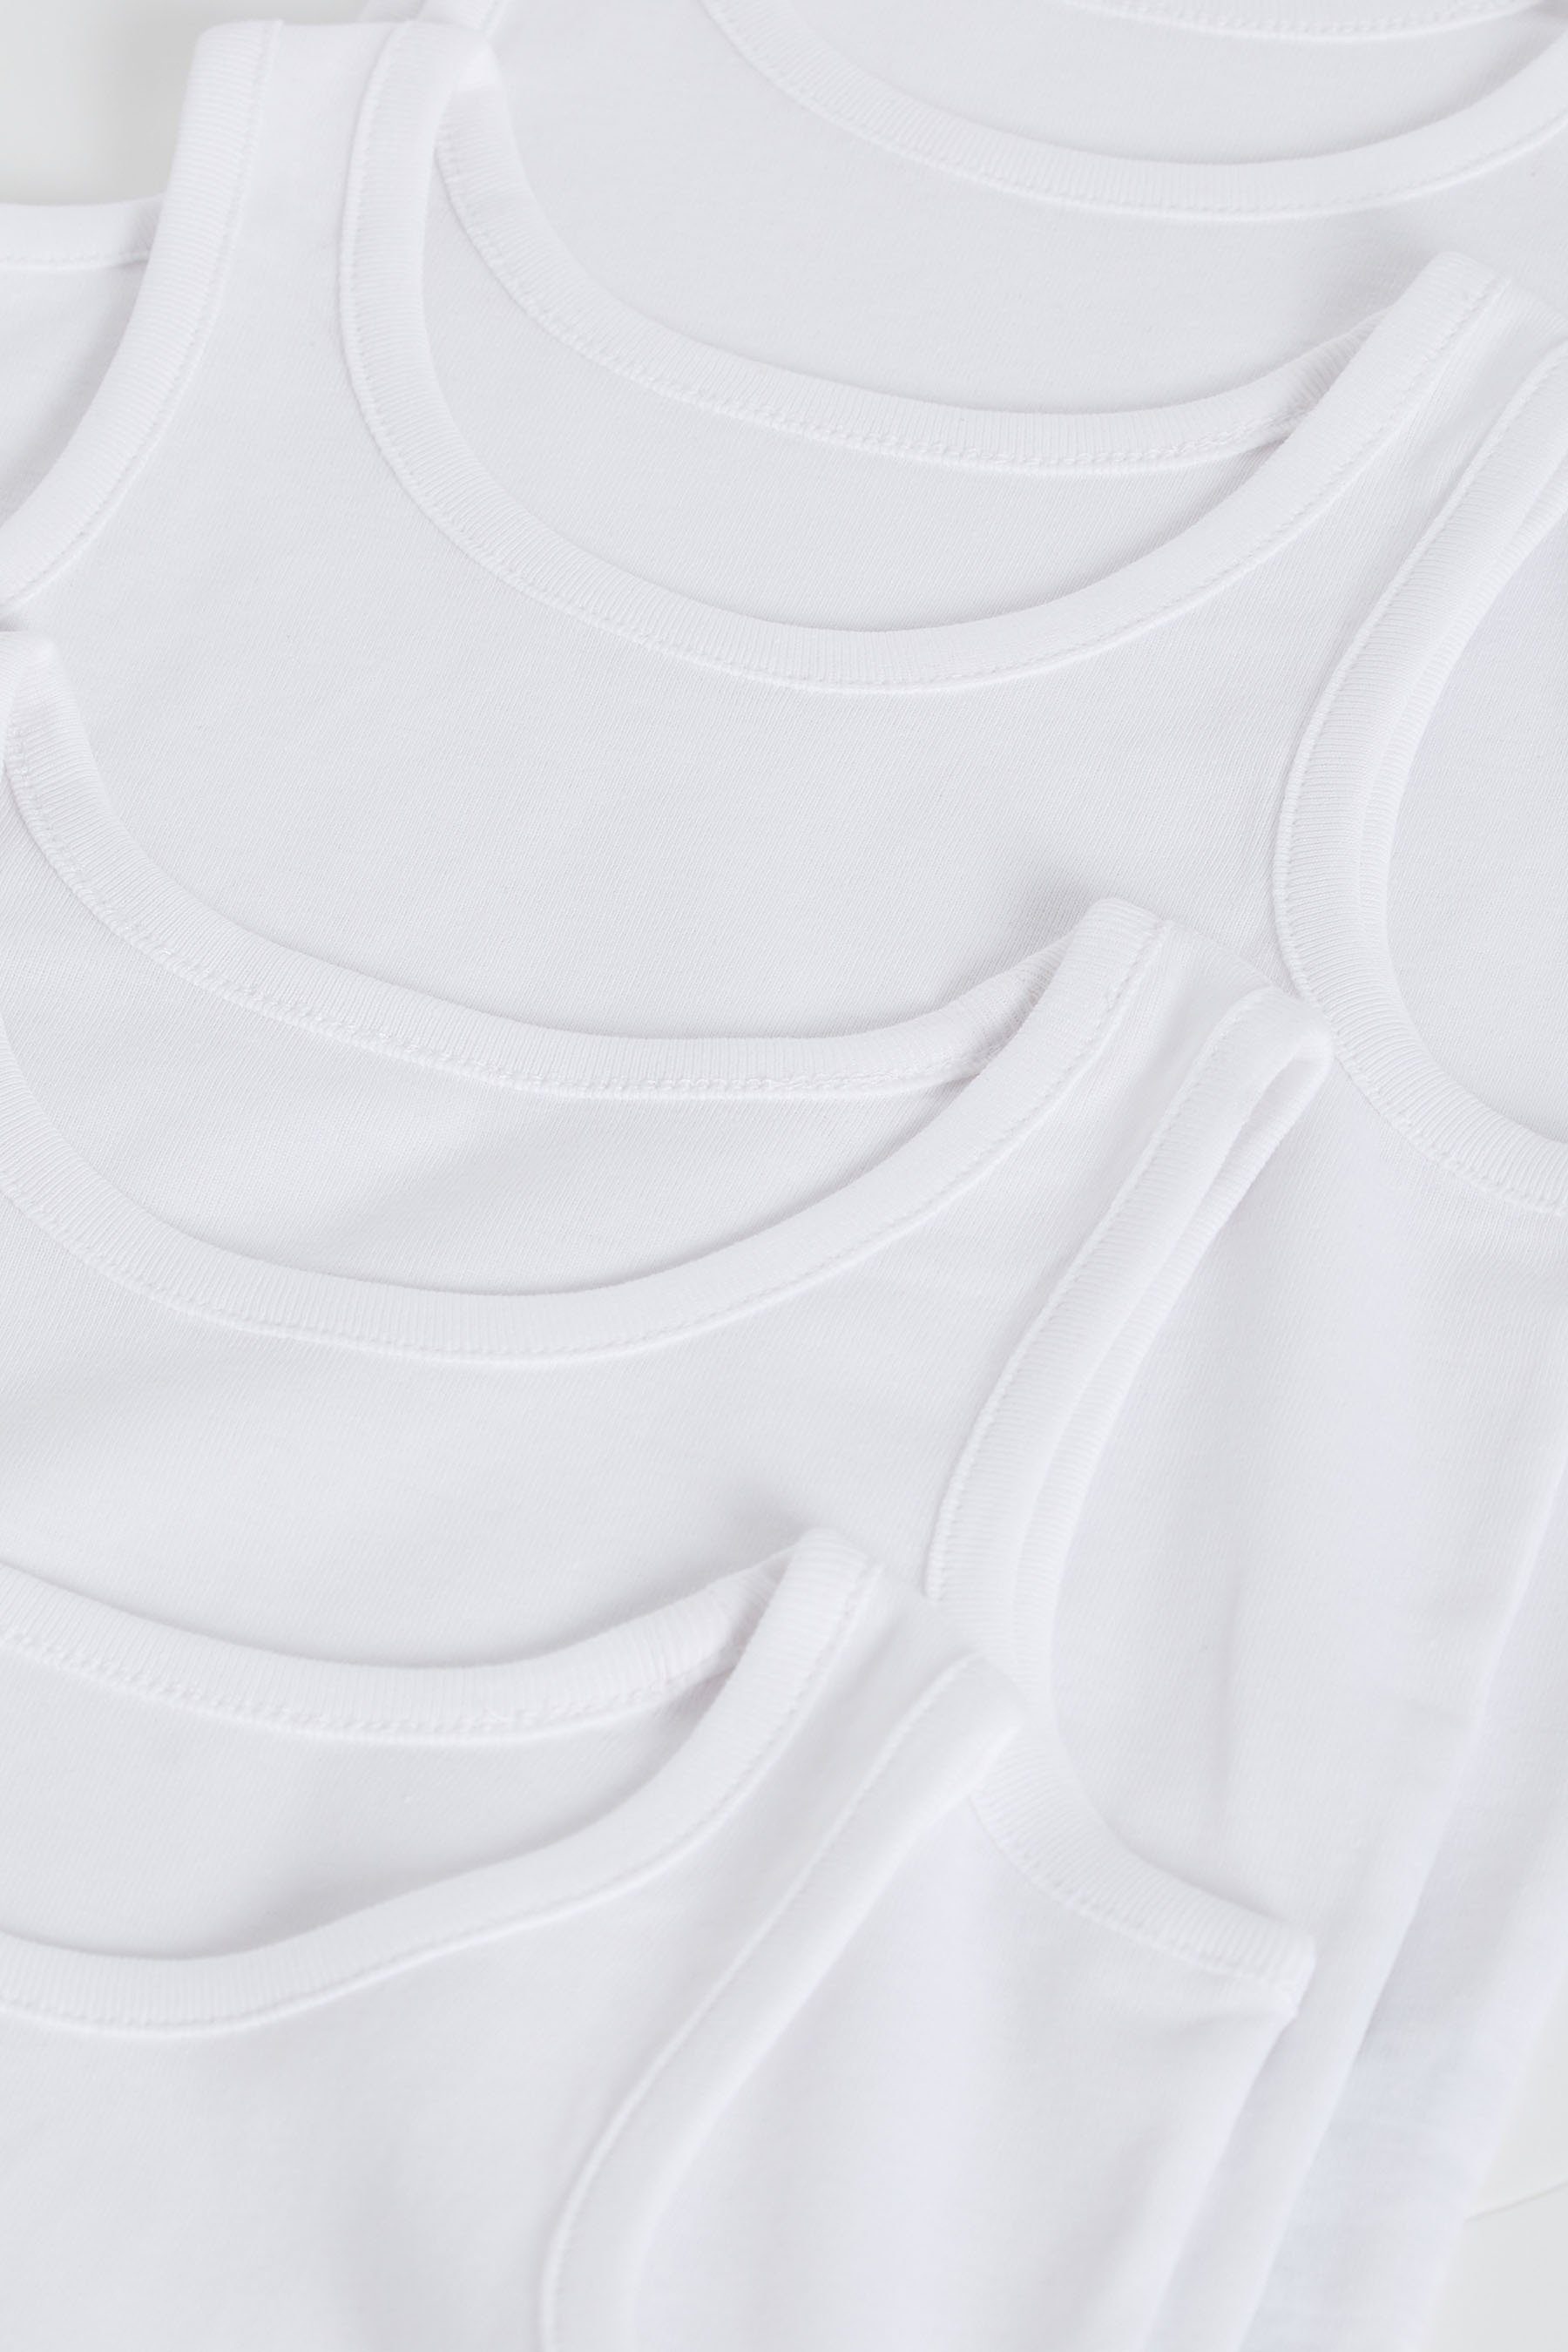 Next Unterhemd Unterhemden White (5-St) aus, 5er-Pack